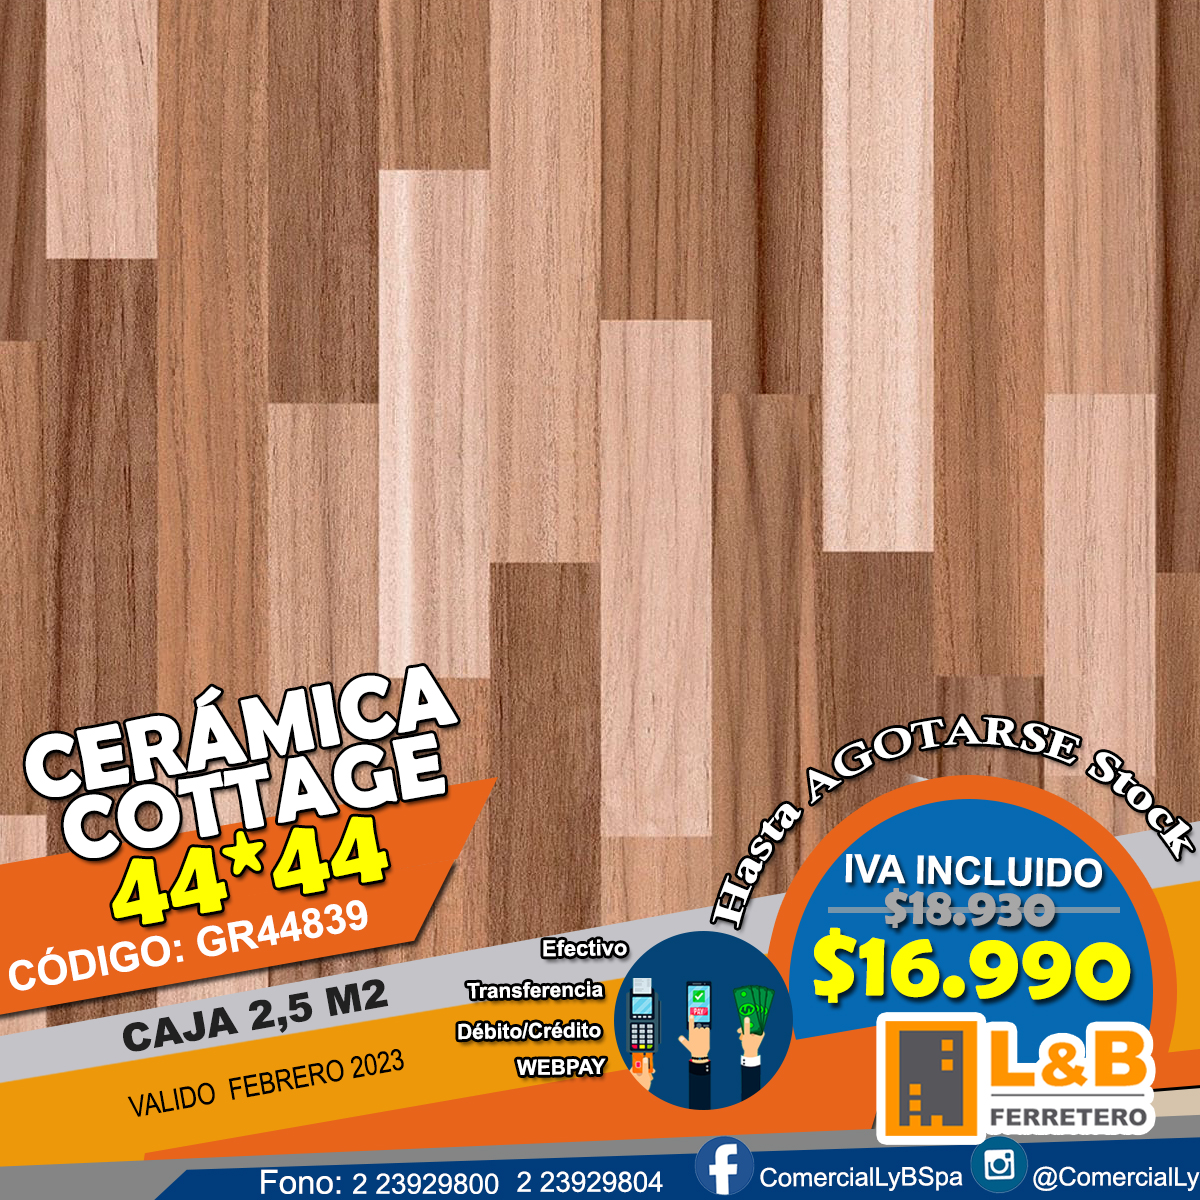 Ceramica LEF 44*44 GR44839 COTTAGE Caja 2,5M2